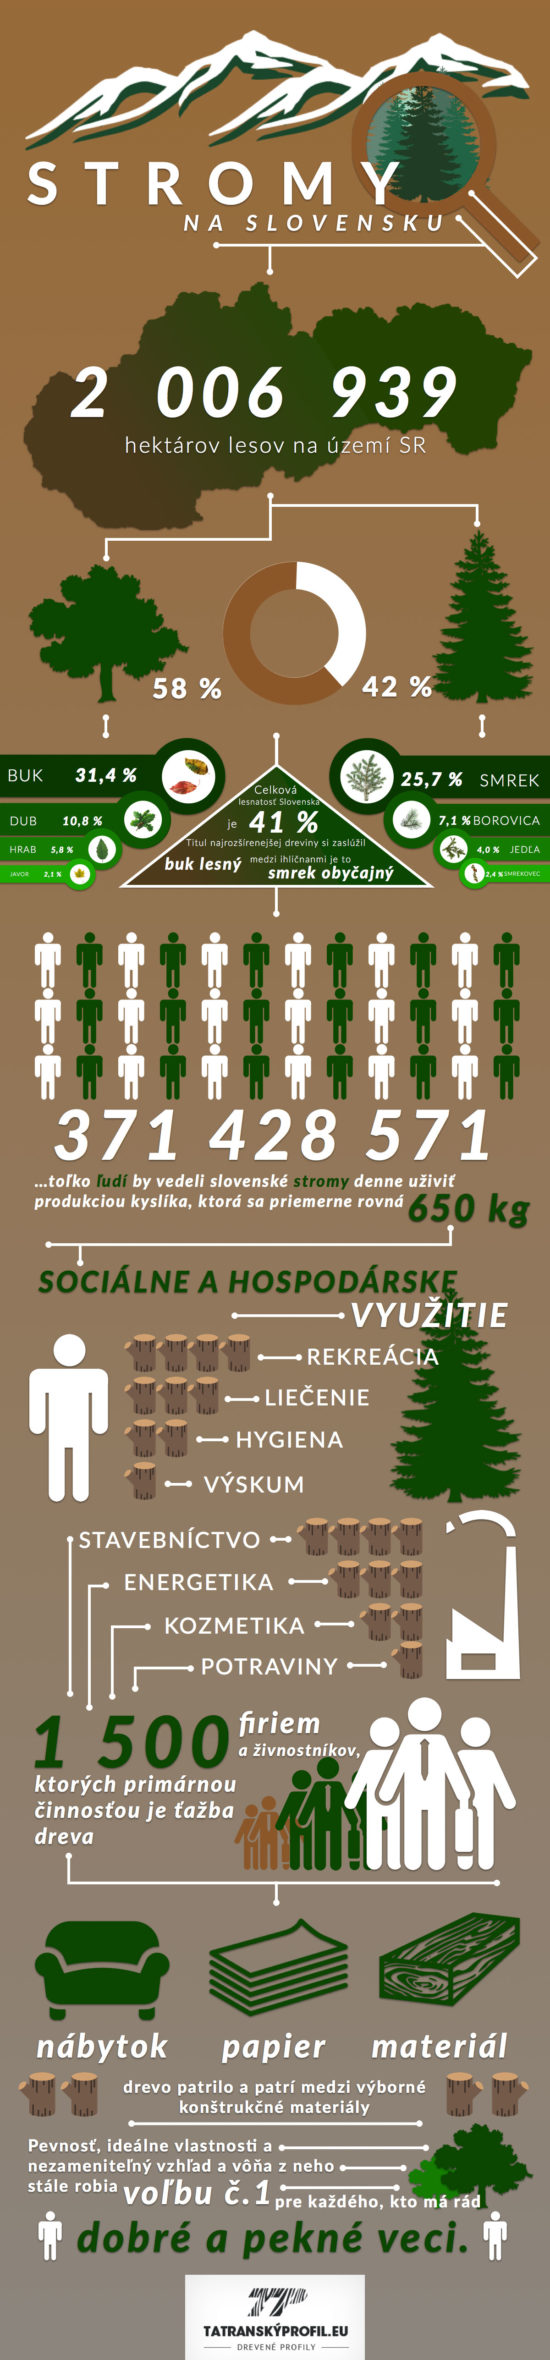 Jak to vypadá se stromovou situací na Slovensku? – Infografika